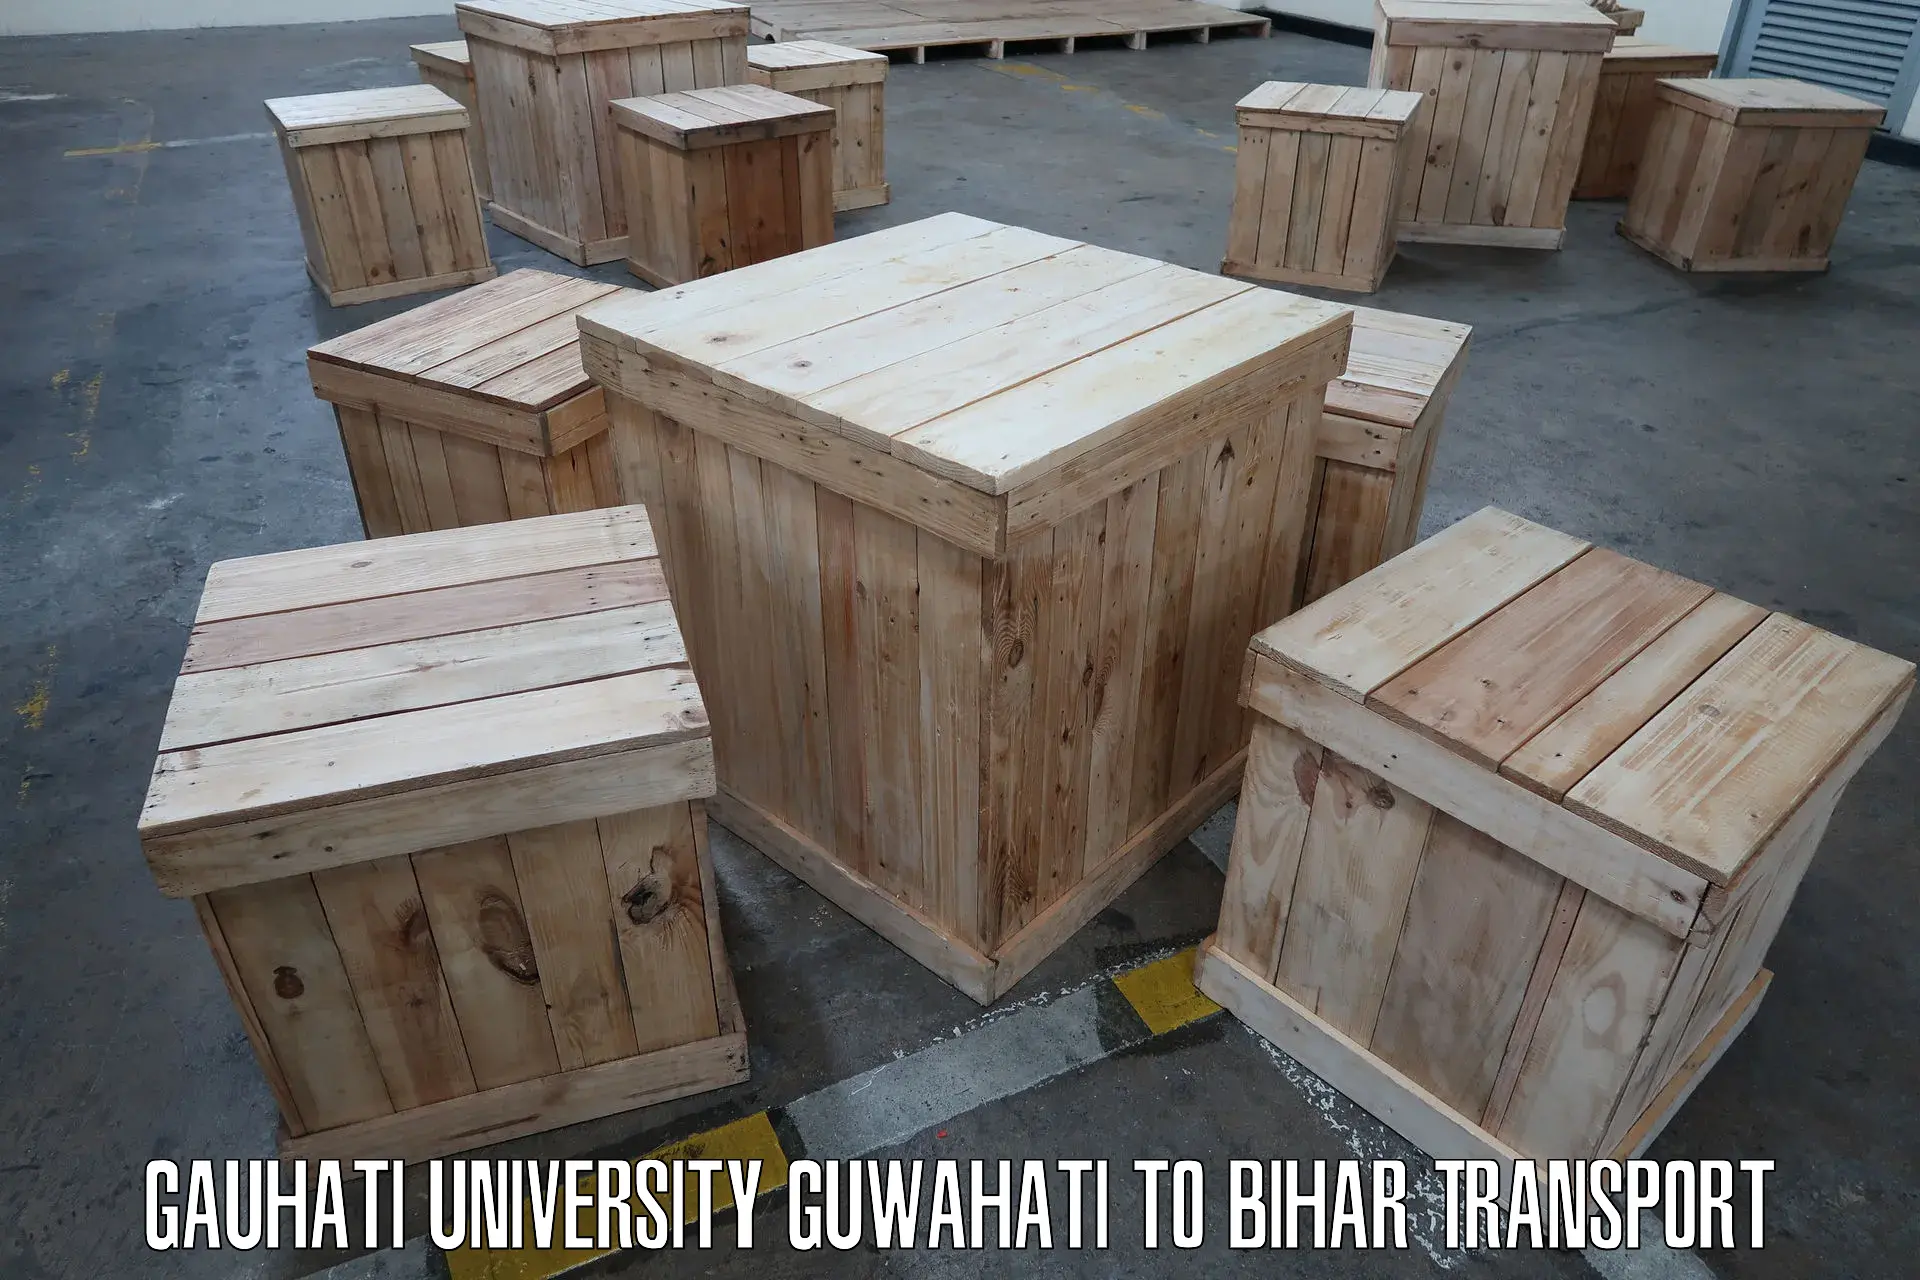 Luggage transport services Gauhati University Guwahati to Lakhisarai